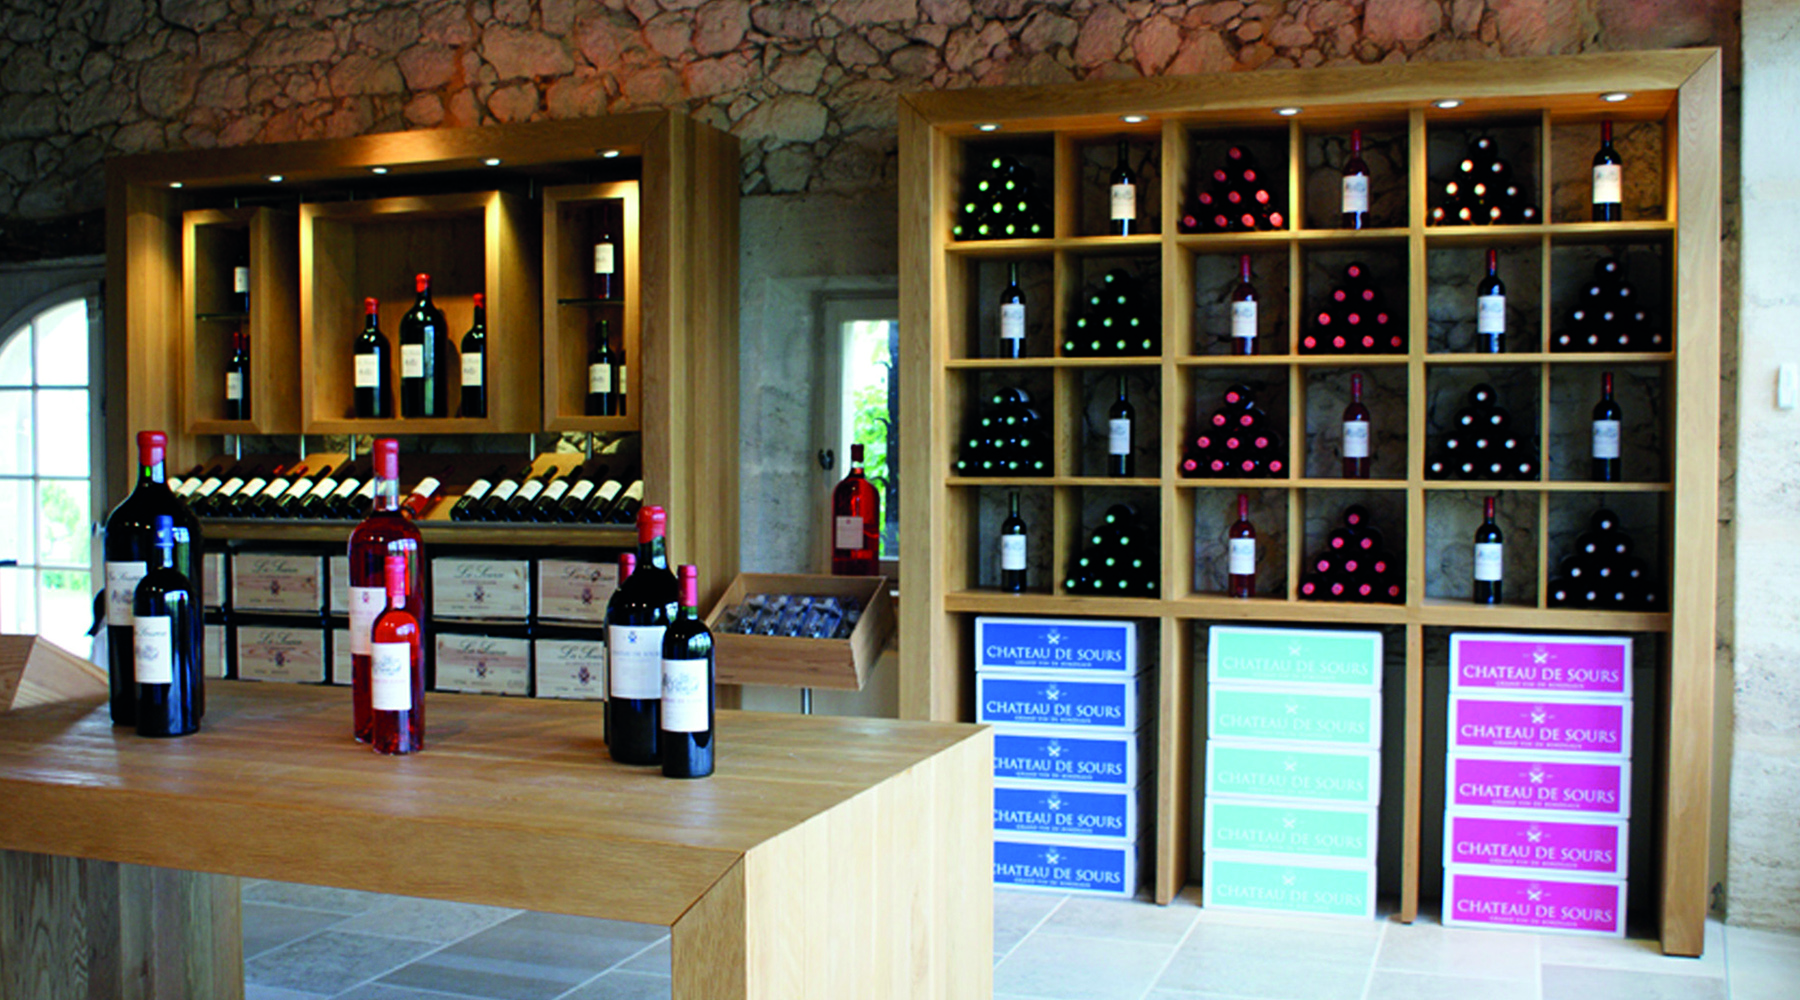 Chateau de Sours, Vineyard tasting & retail area